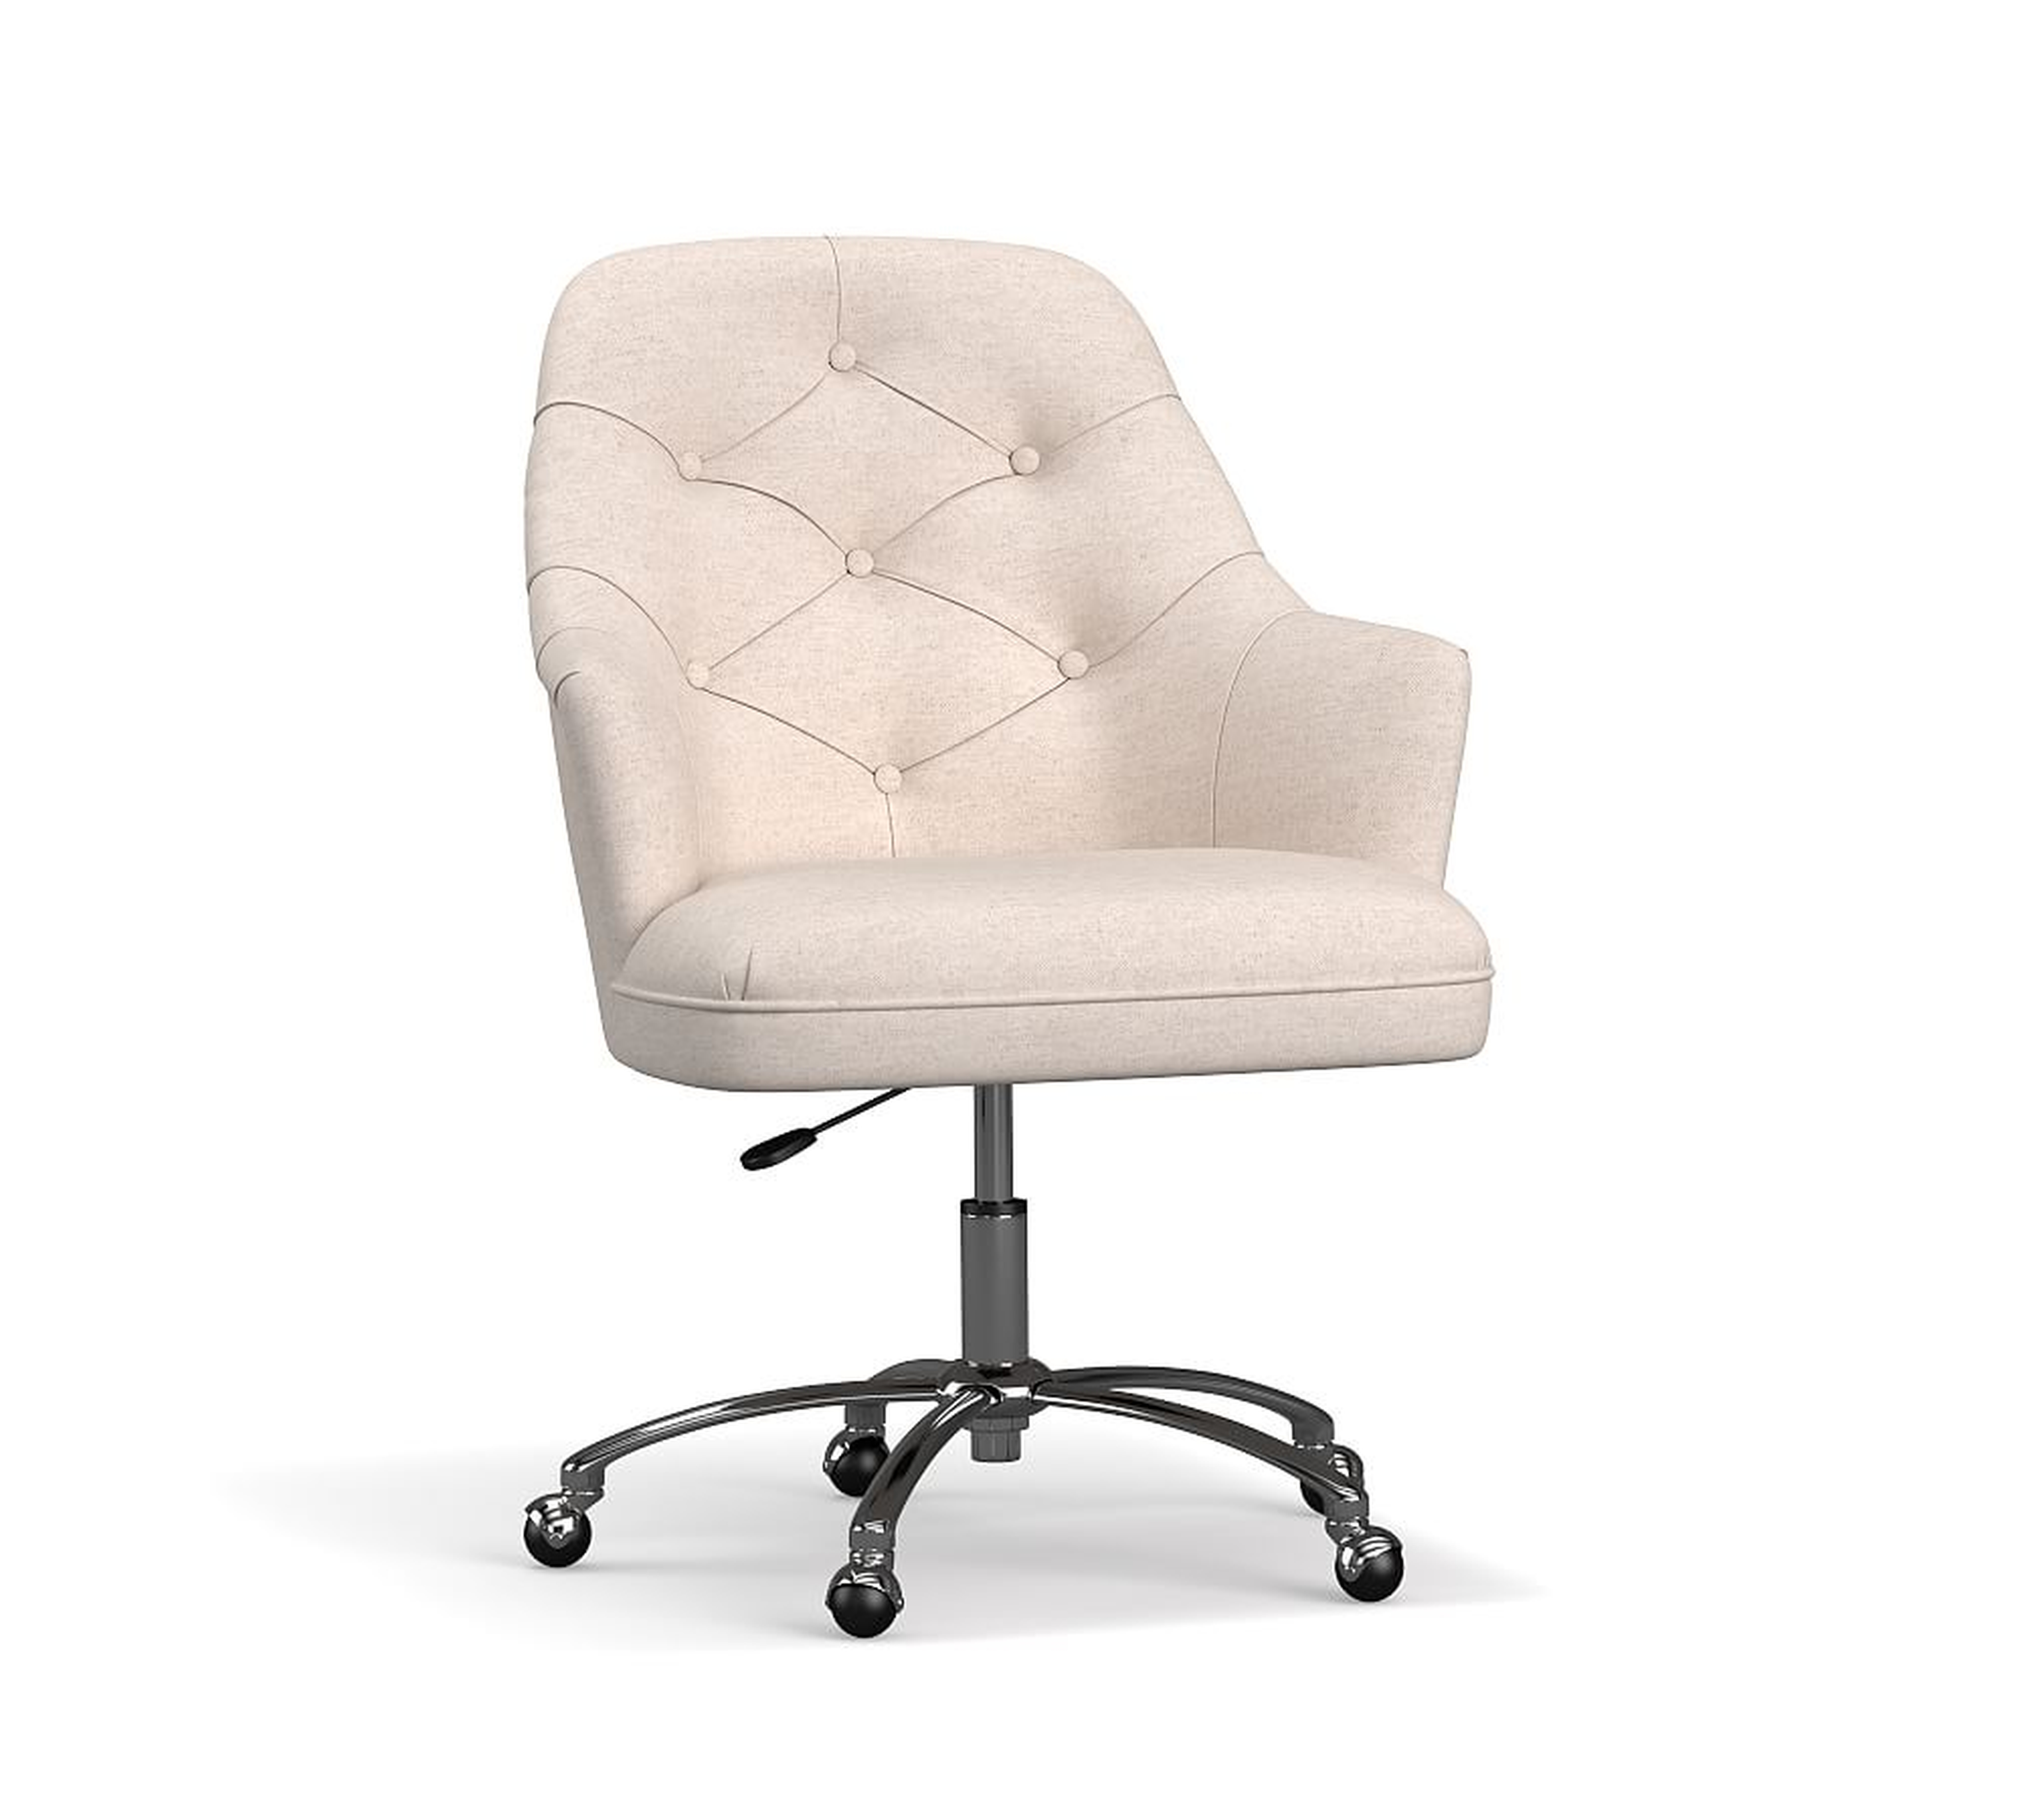 Everett Upholstered Swivel Desk Chair, Brushed Nickel Base, Park Weave Oatmeal - Pottery Barn